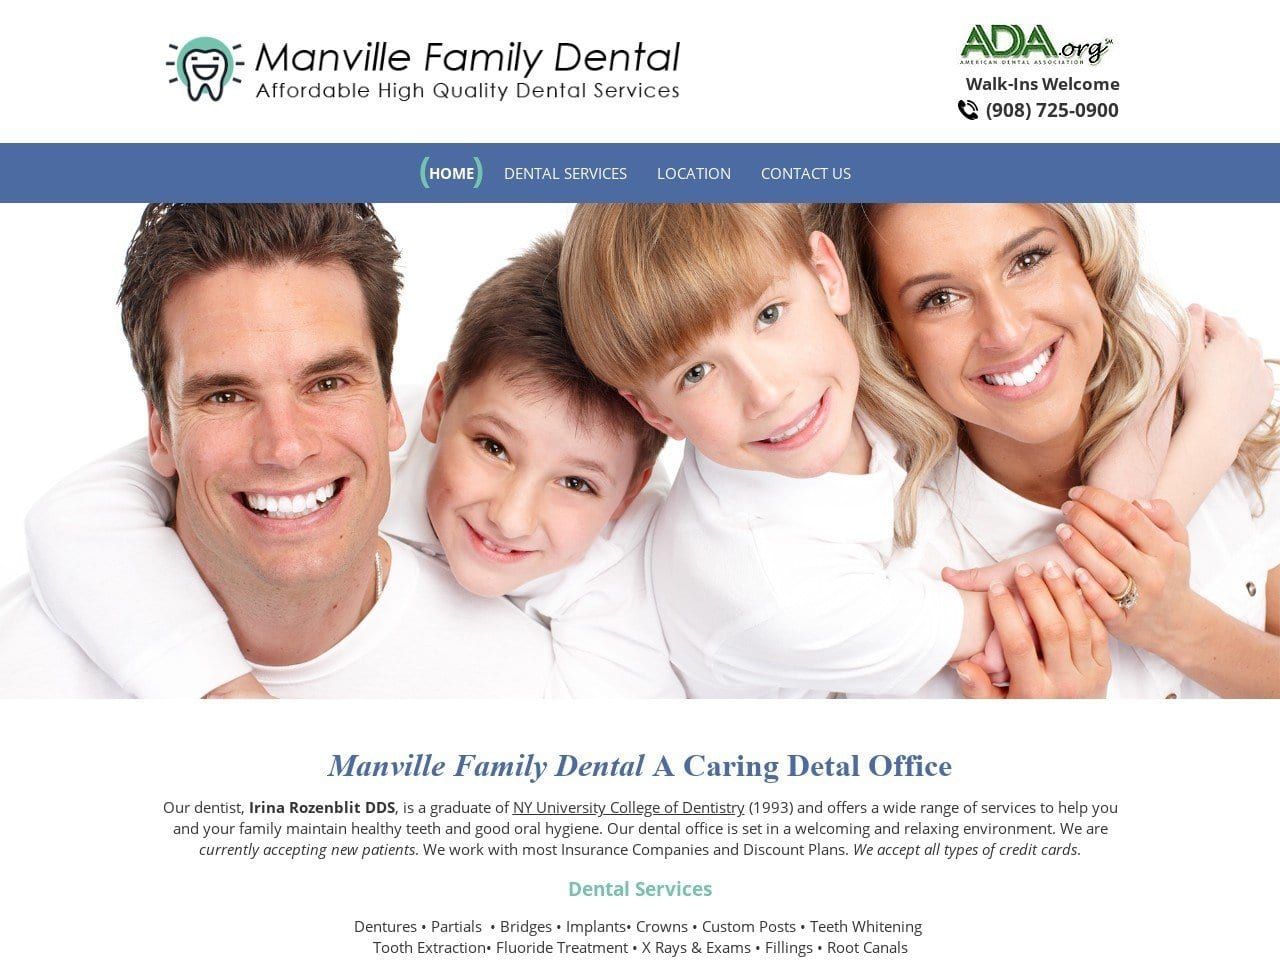 Manville Family Dental Website Screenshot from manvillefamilydental.com